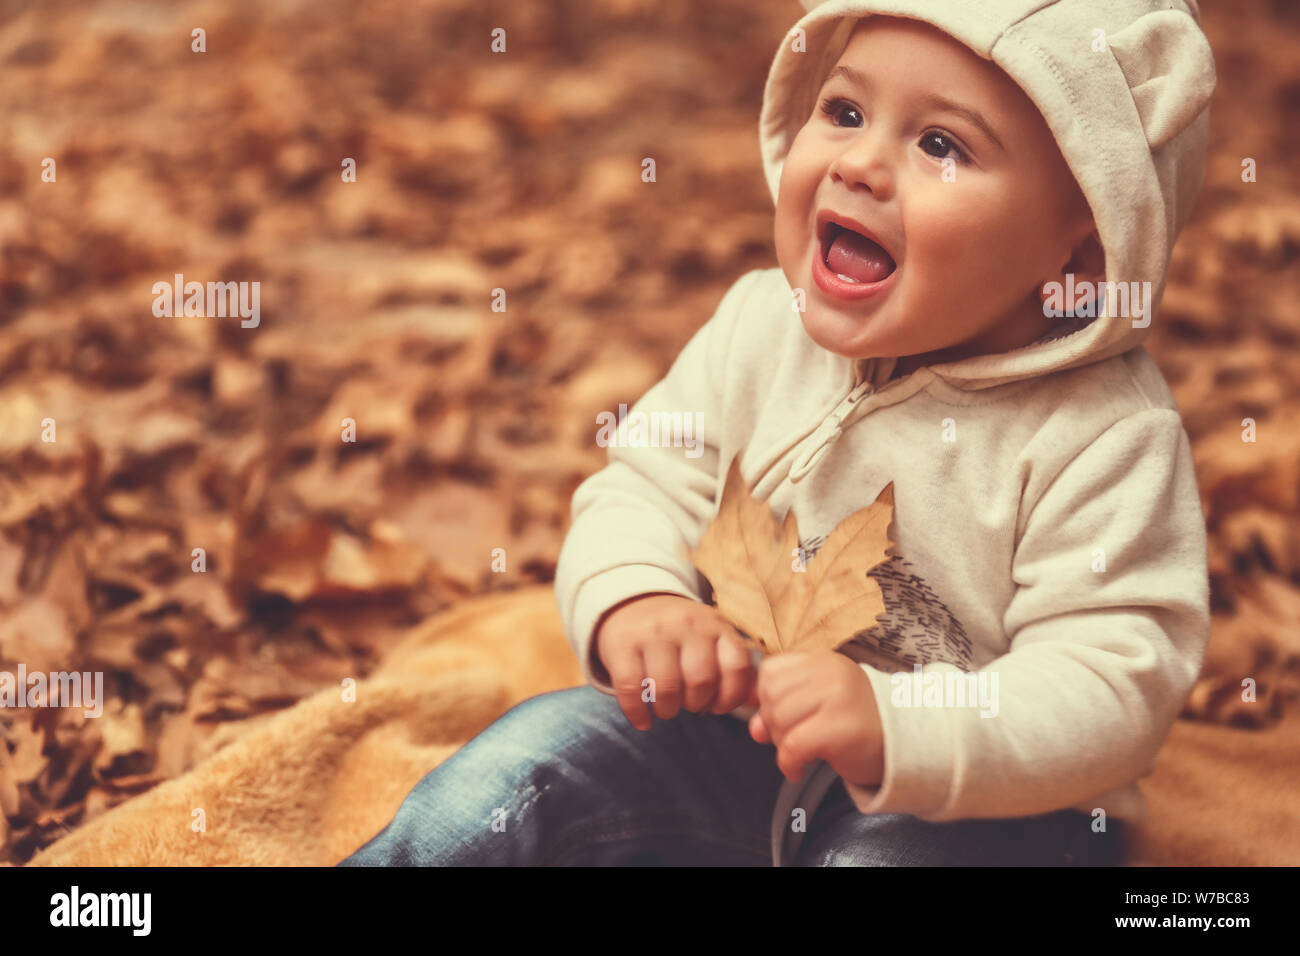 Portrait Of Happy aufgeregten kleinen Jungen Spaß im Park, fröhliches Kind sitzen auf die Decke auf dem Boden mit trockenen Baum Blättern bedeckt Stockfoto